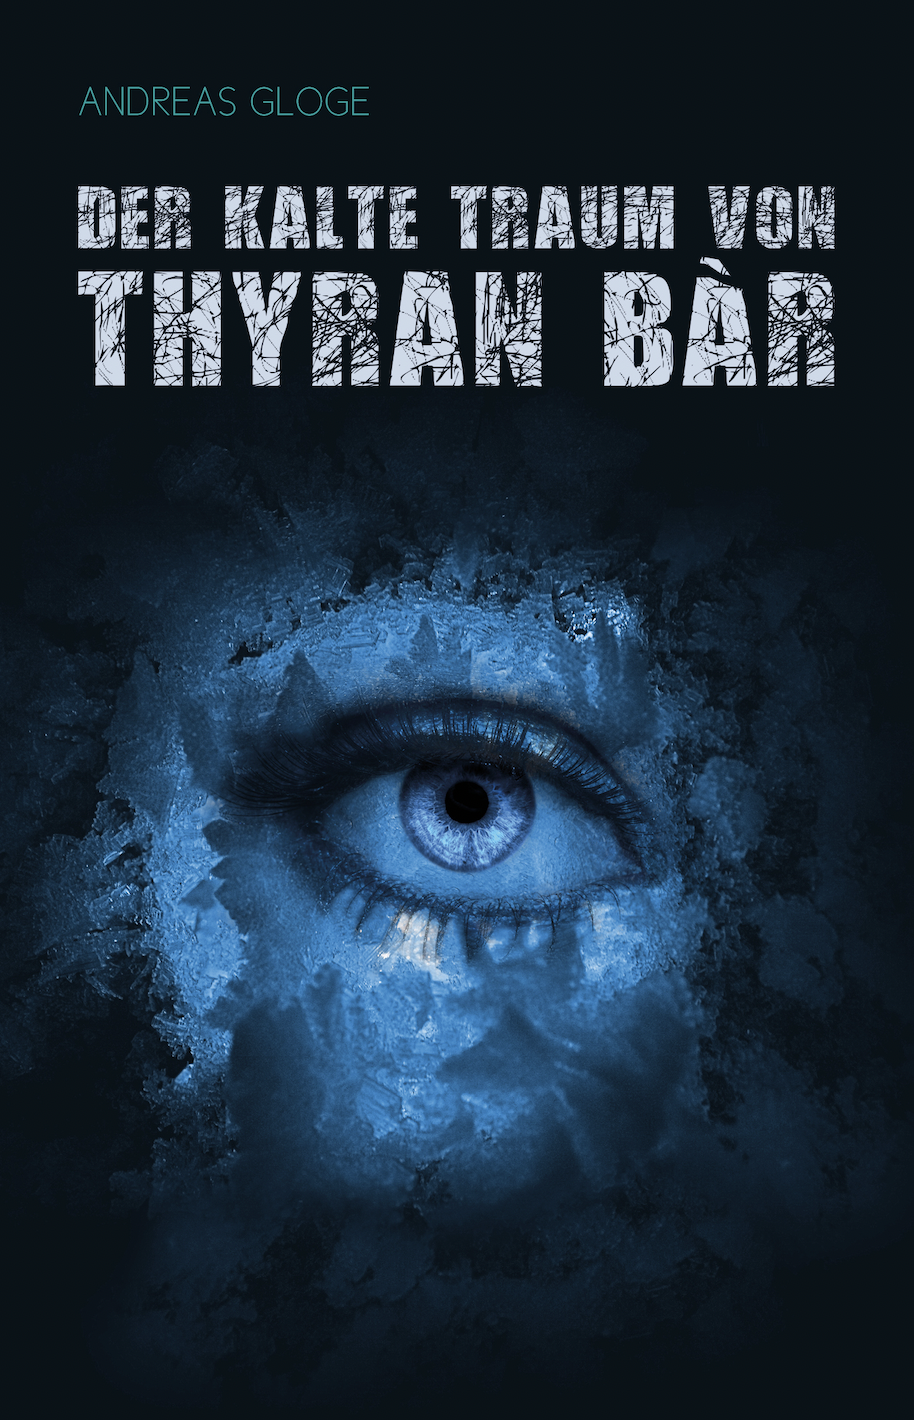 Der kalte Traum von Thyran Bàr